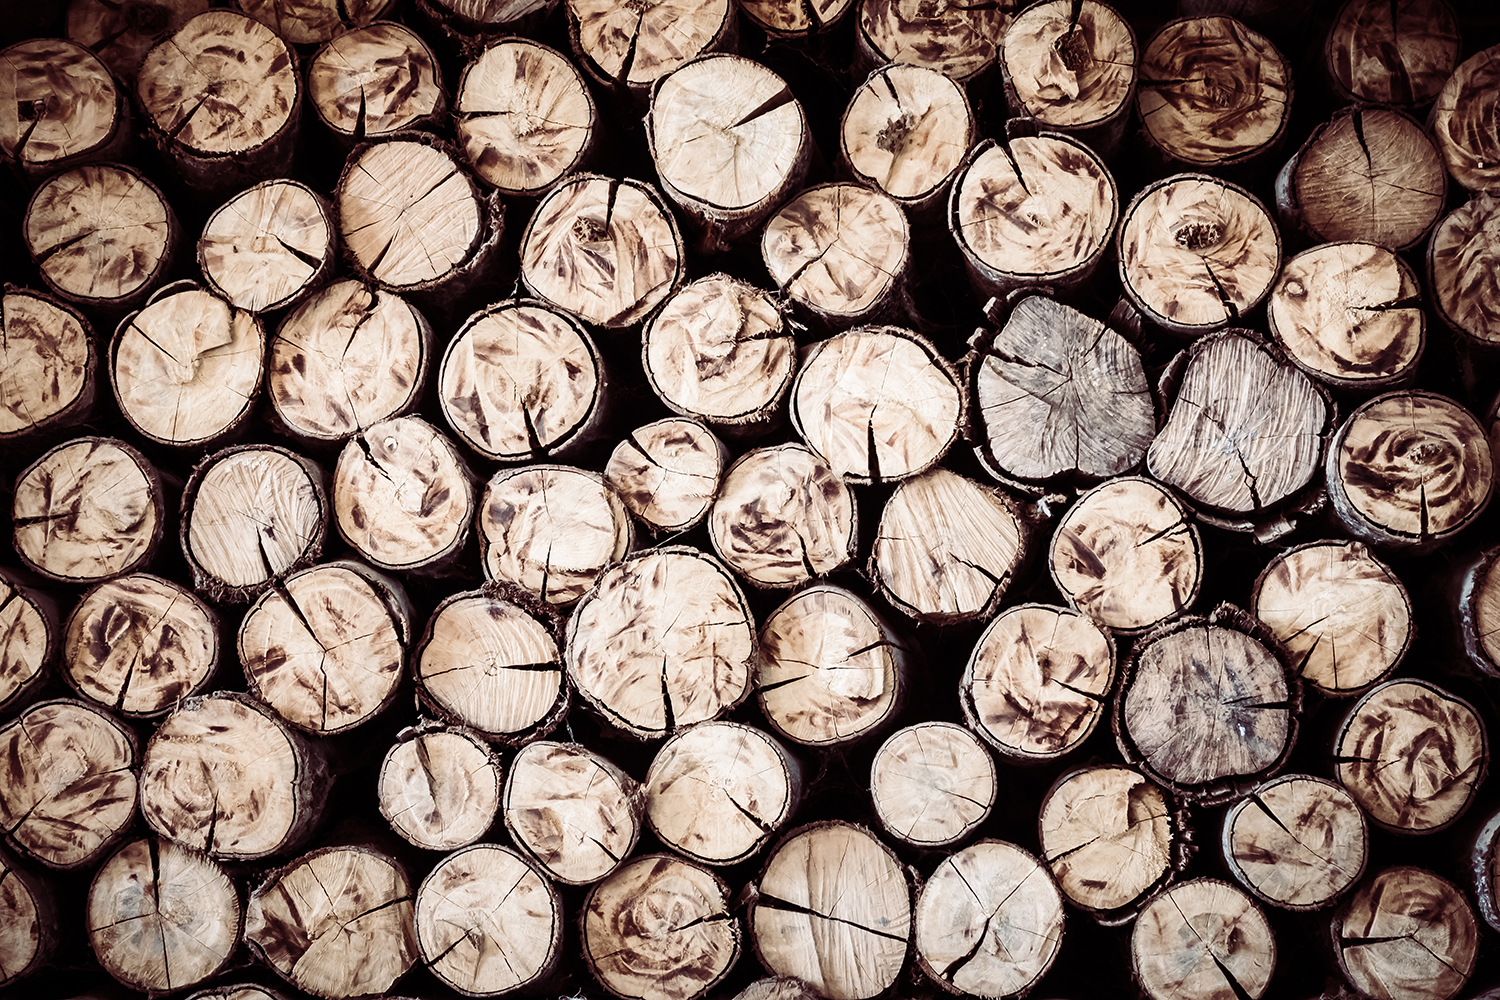 Buy Firewood Logs Wallpaper Online